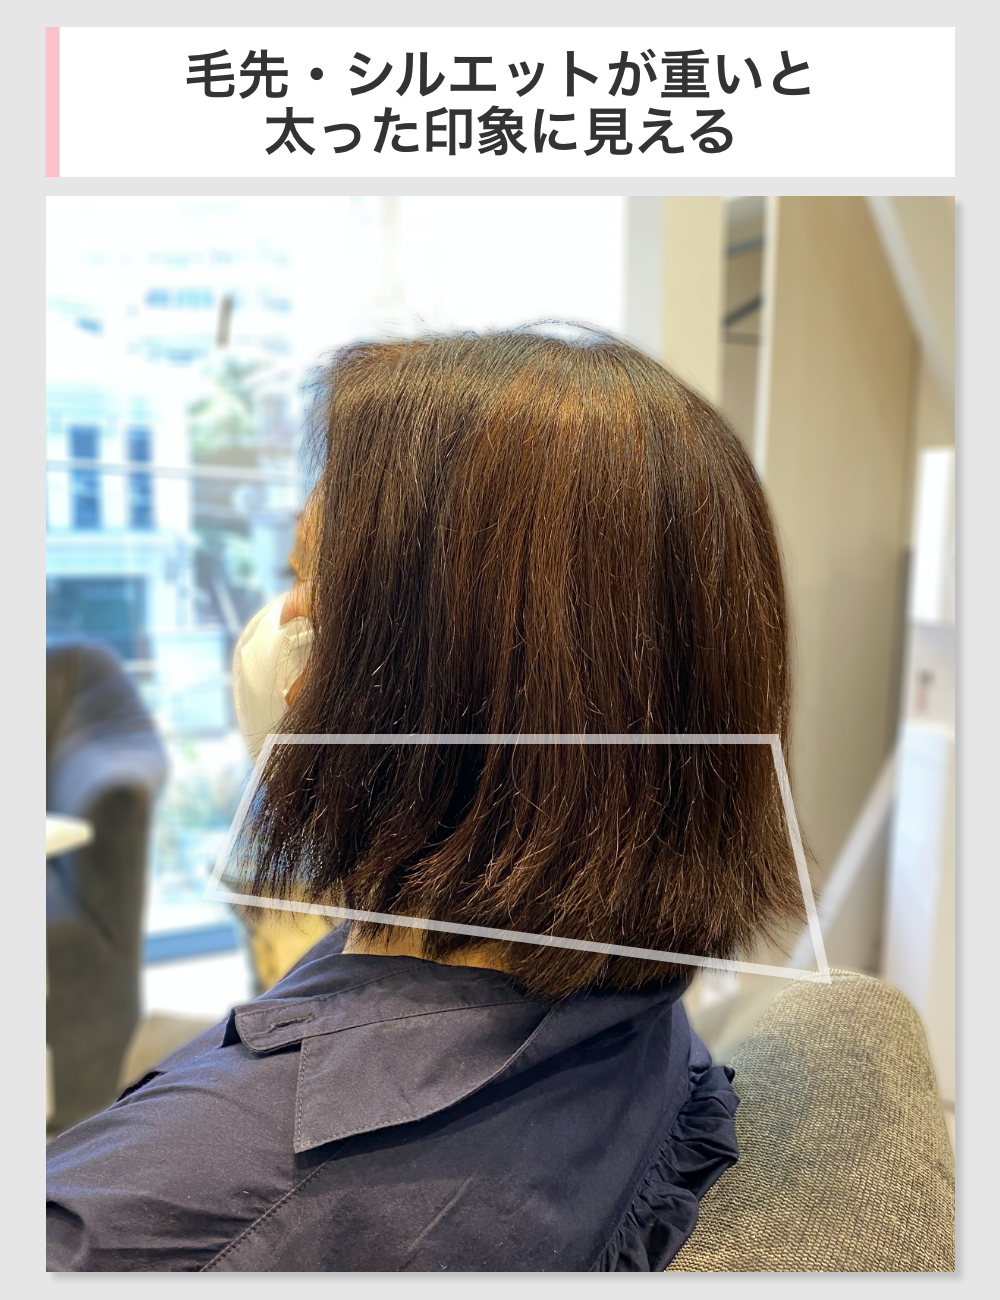 60代のぽっちゃりを素敵にカバーできる髪型 似合う髪型を美容師が解説 くせ毛love 40歳からのヘアケア情報サイト